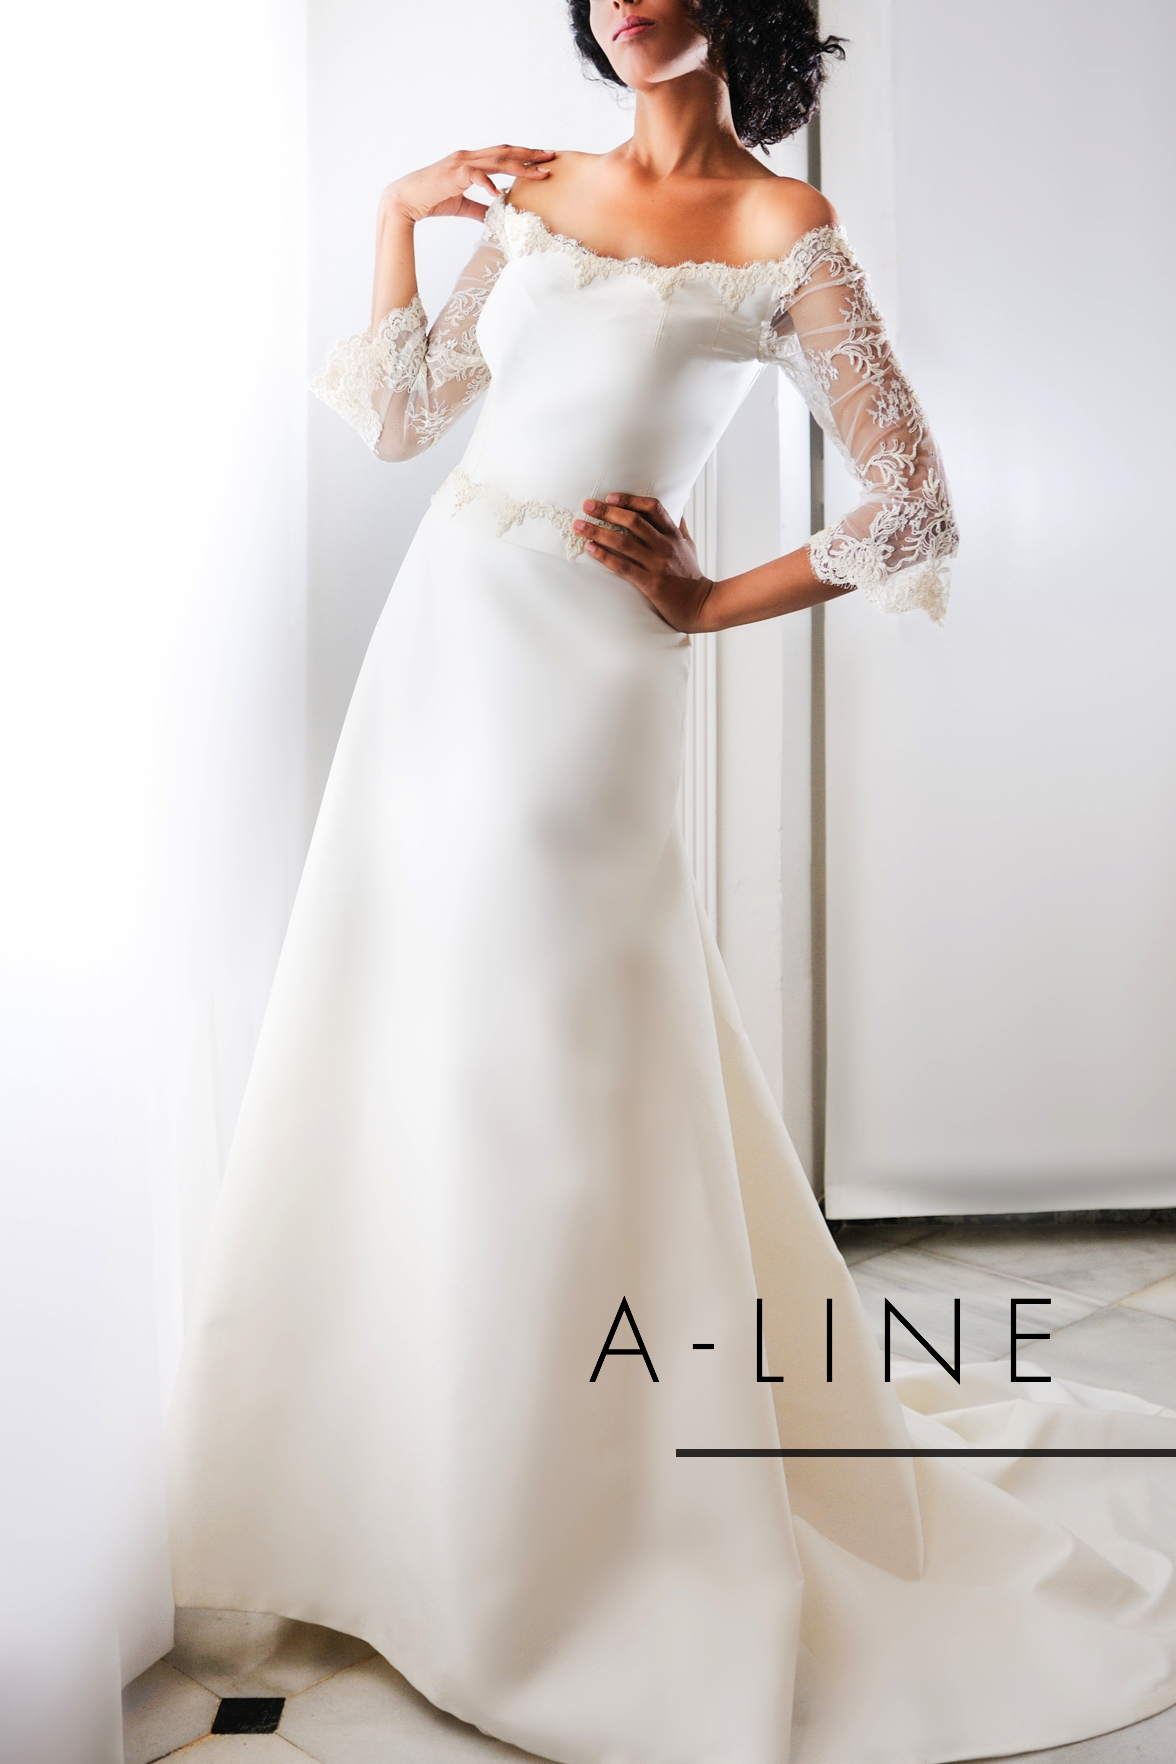 A-line Dresses